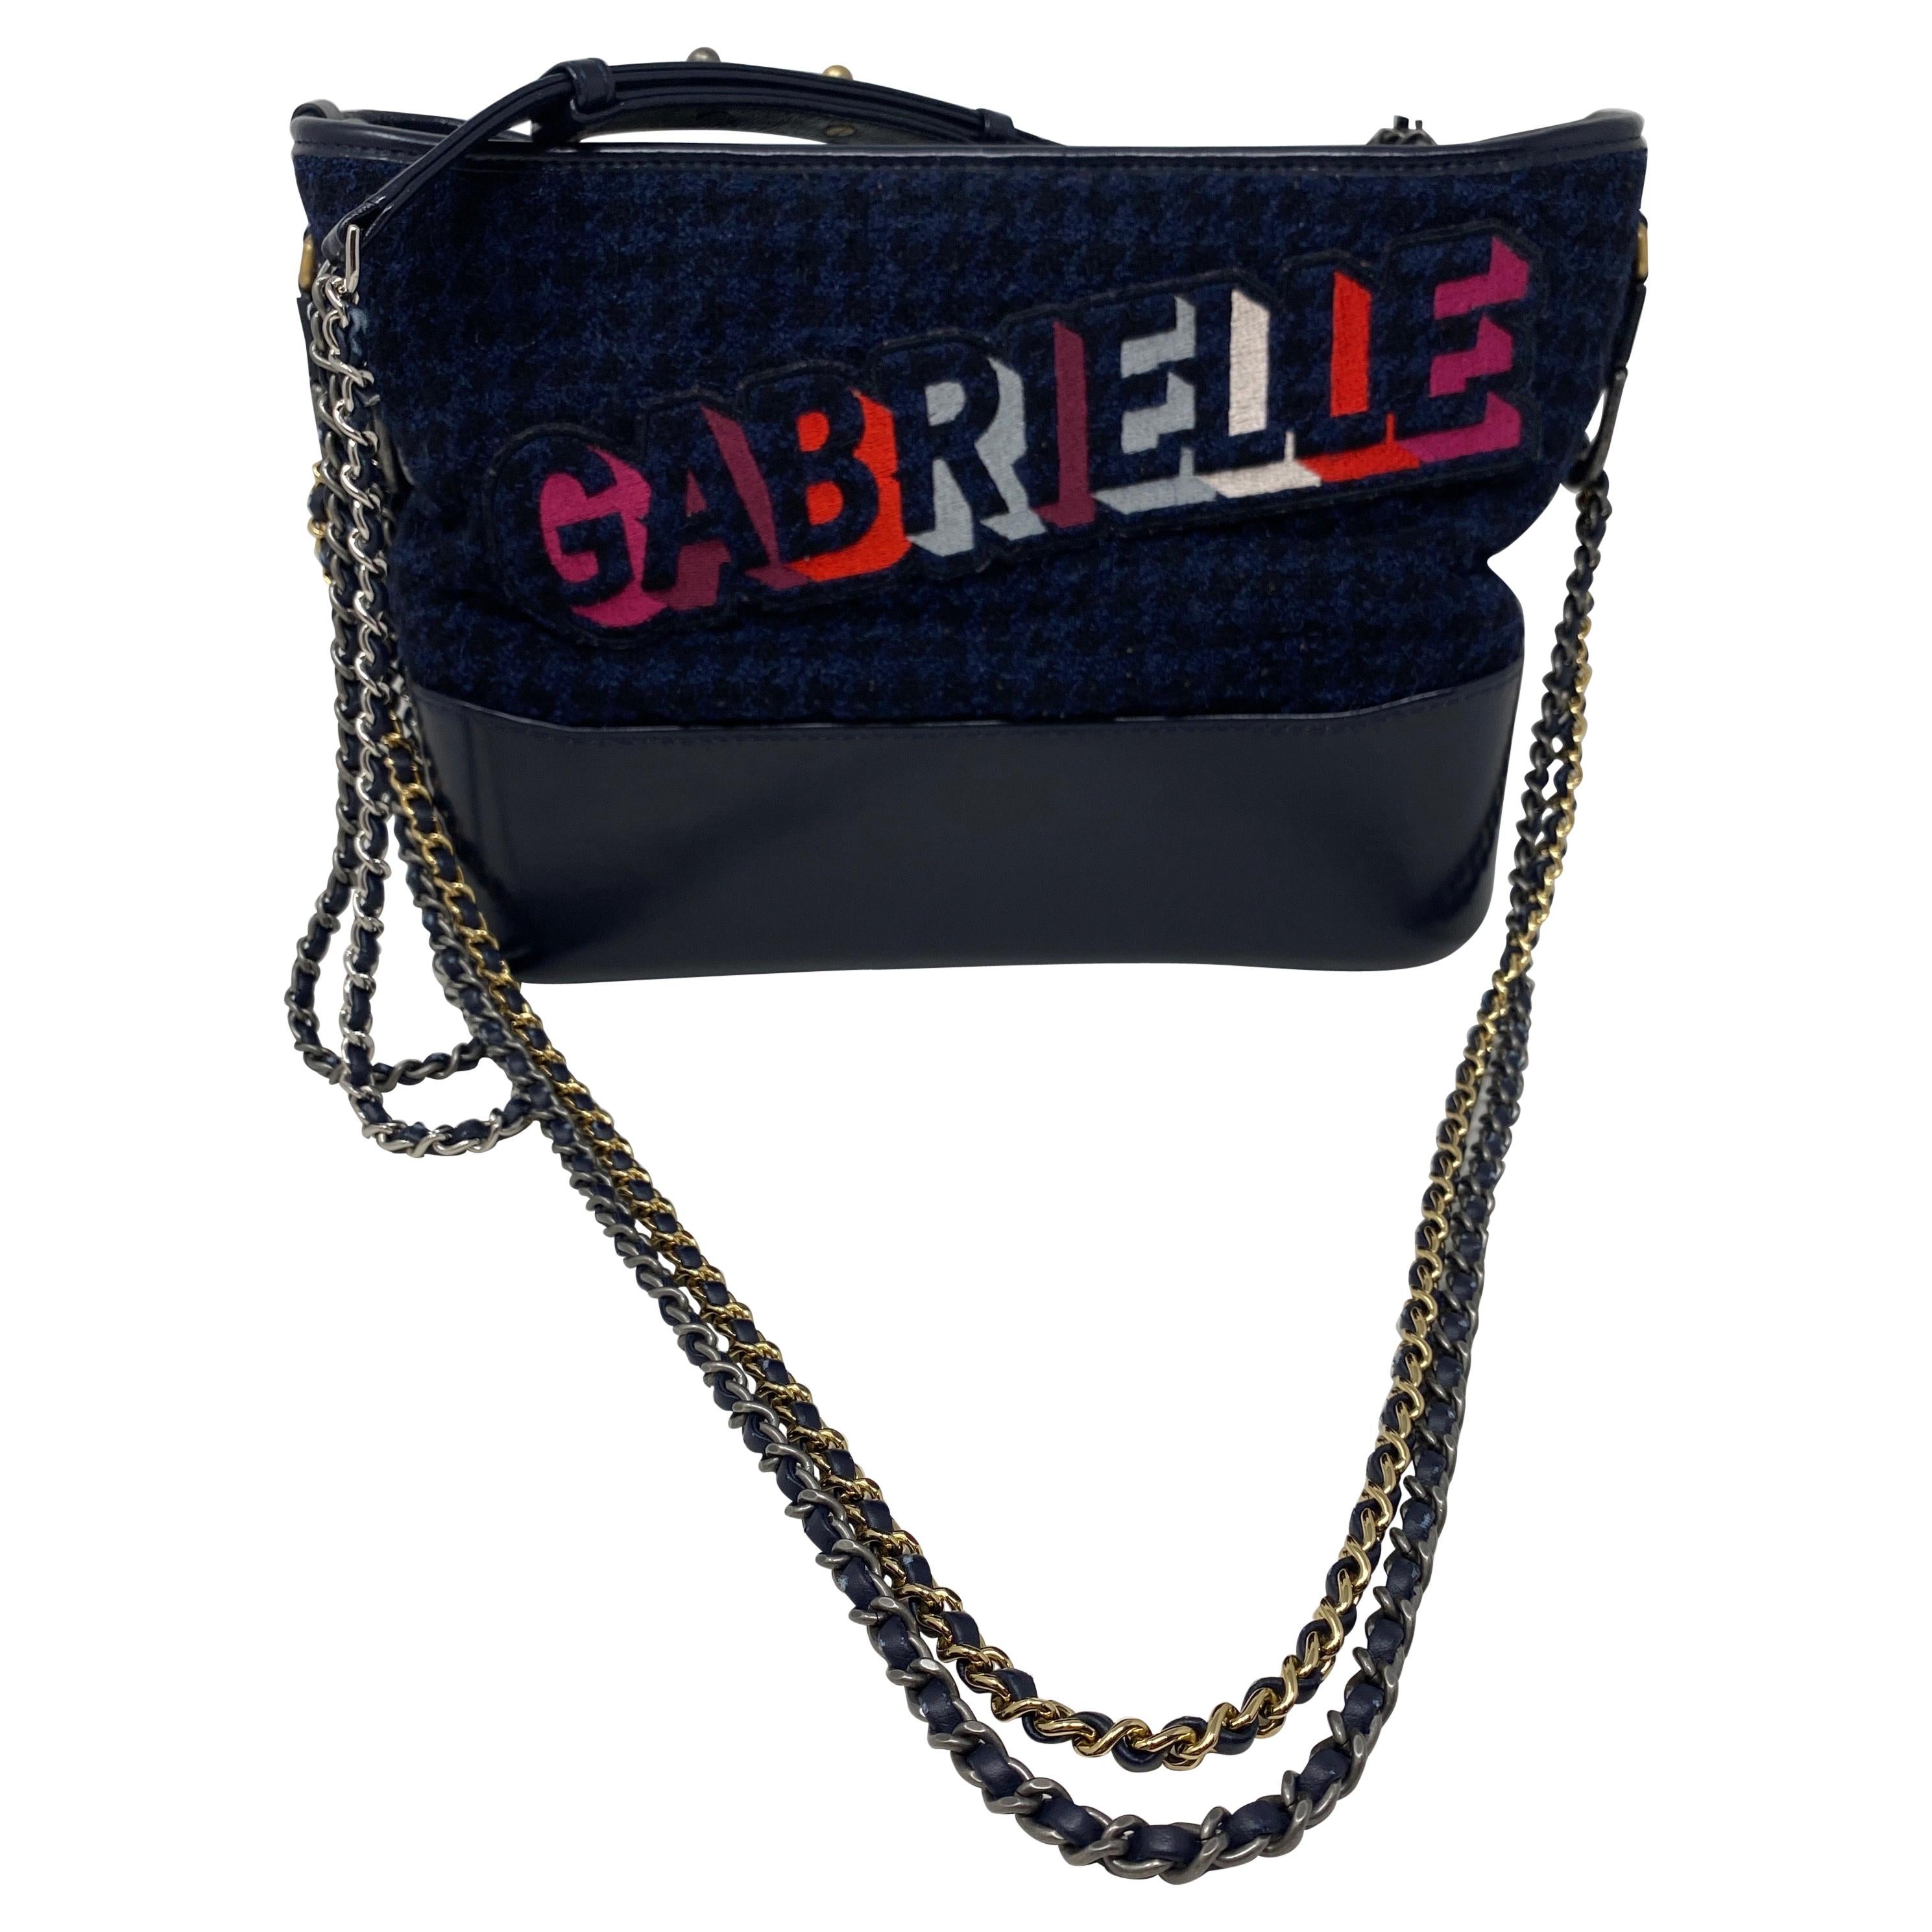 Chanel Gabrielle Bag 